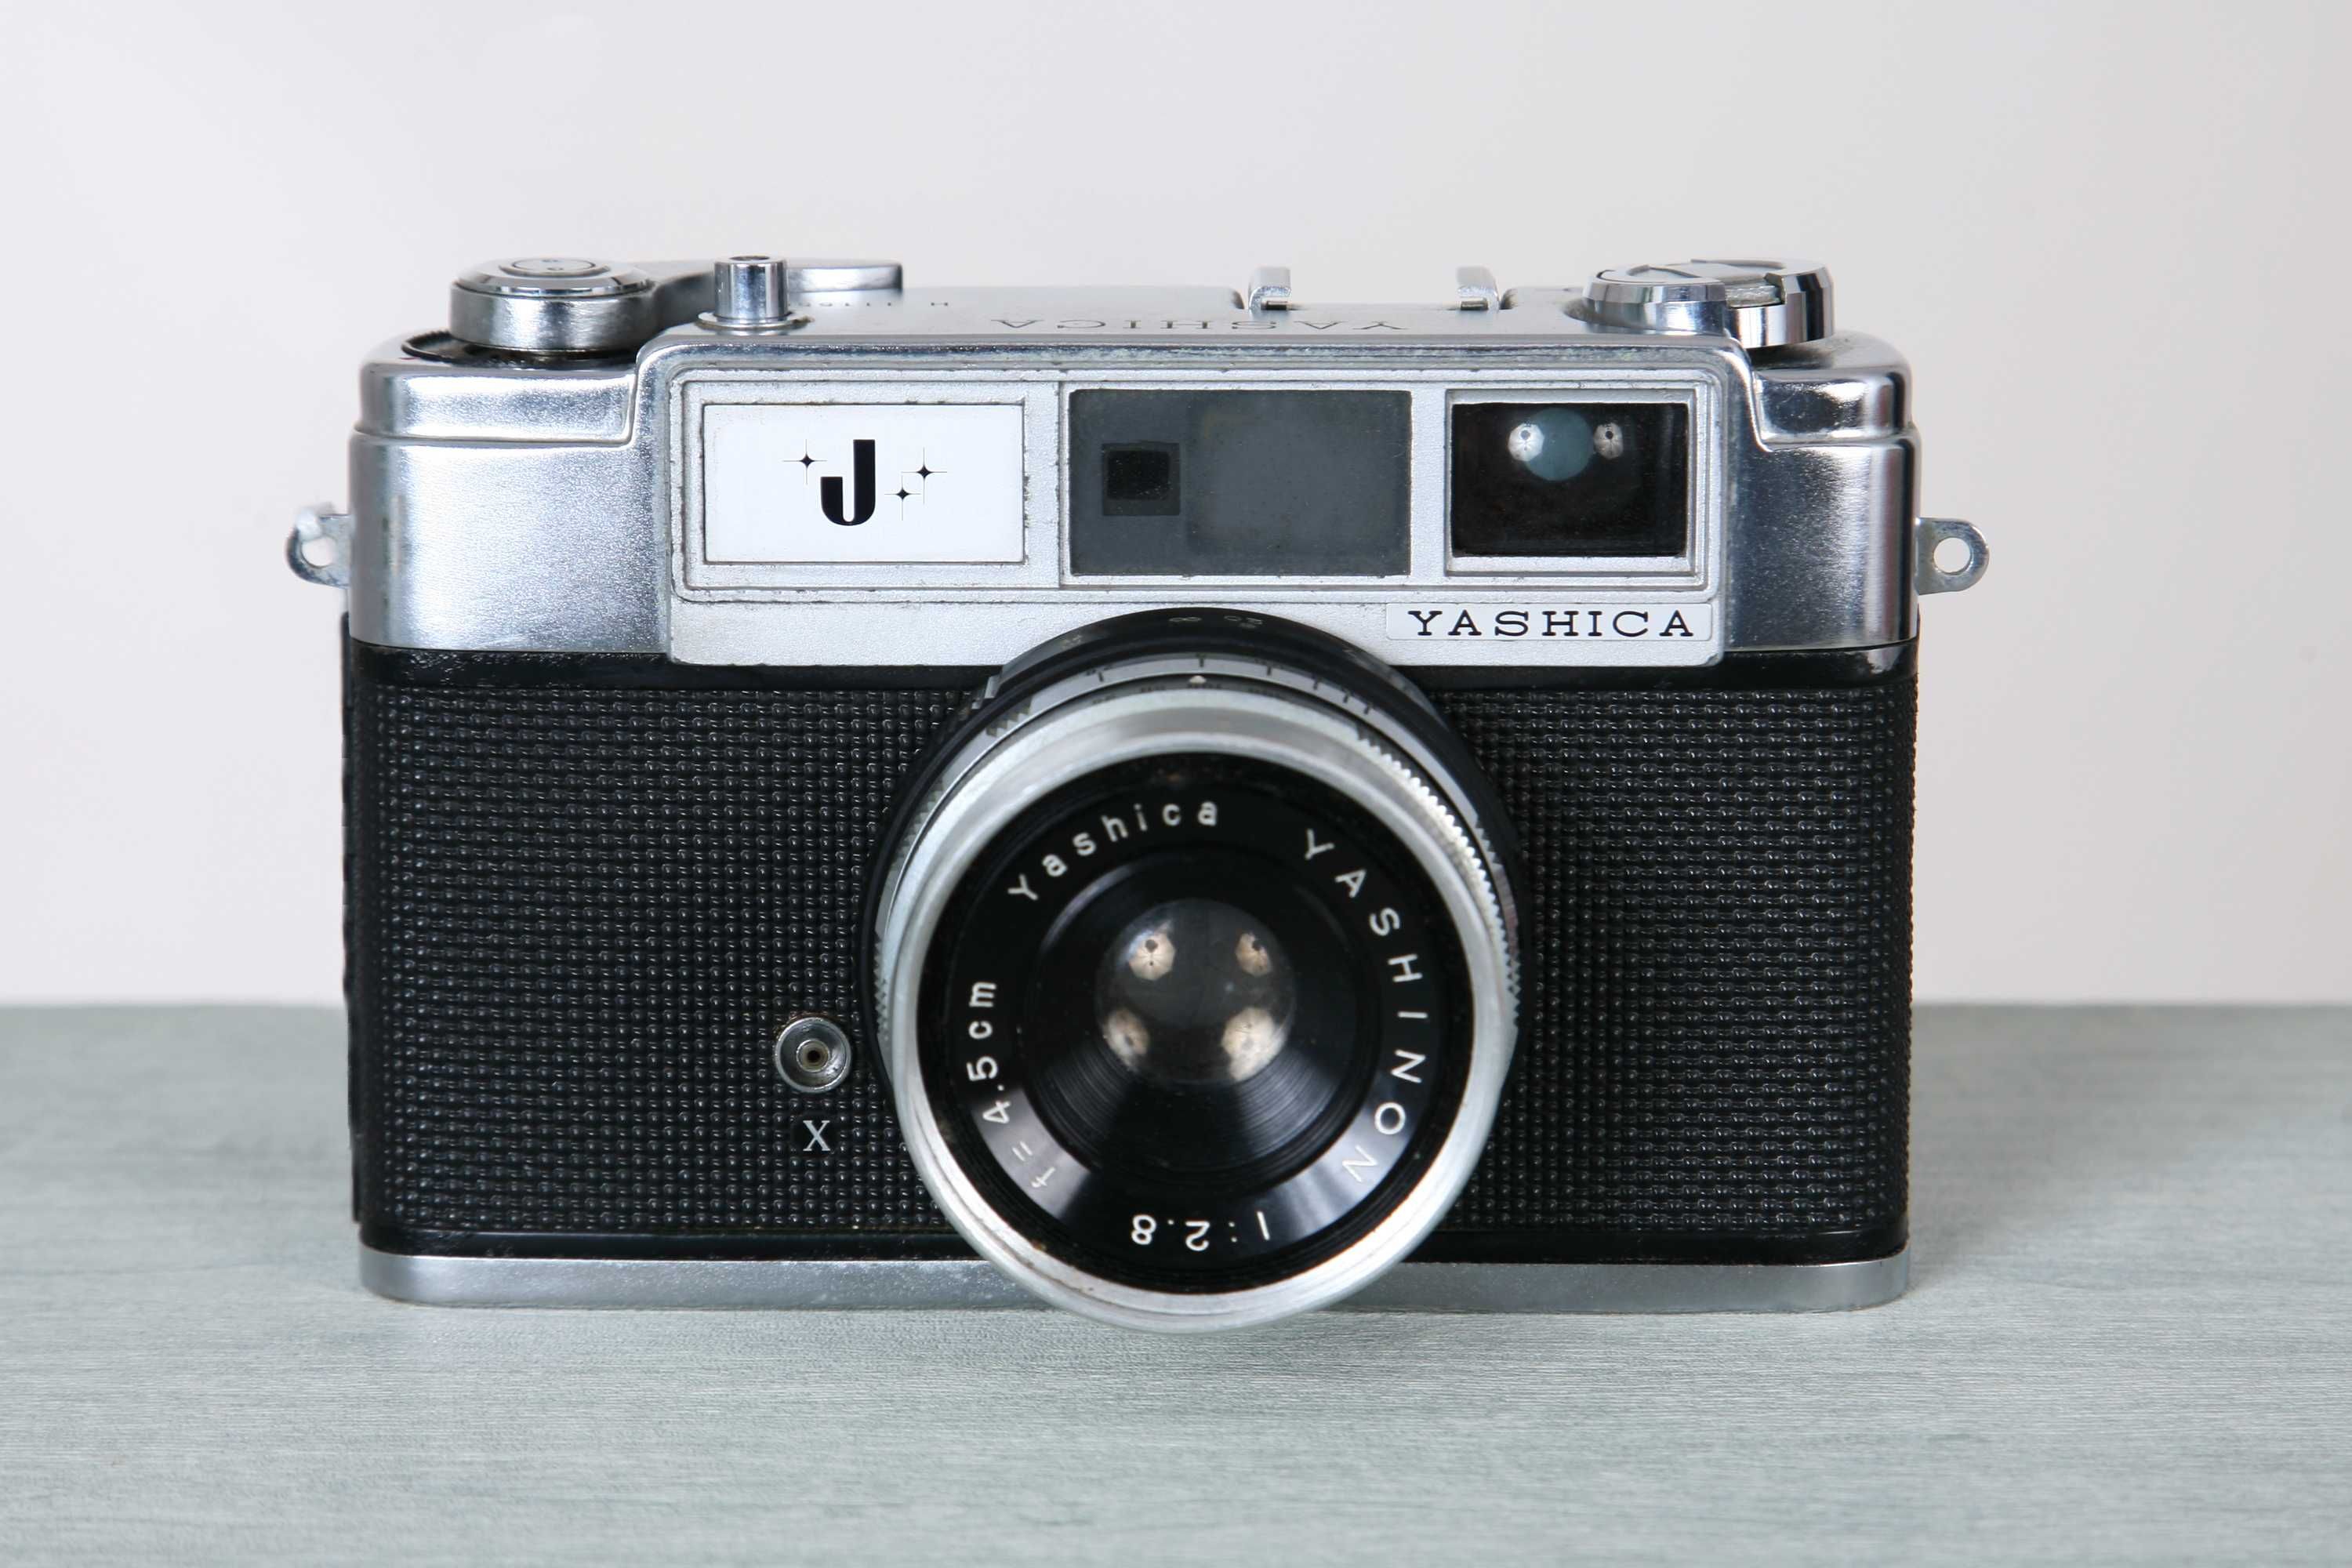 Maquinas fotográficas analógicas compactas da marca Yashica